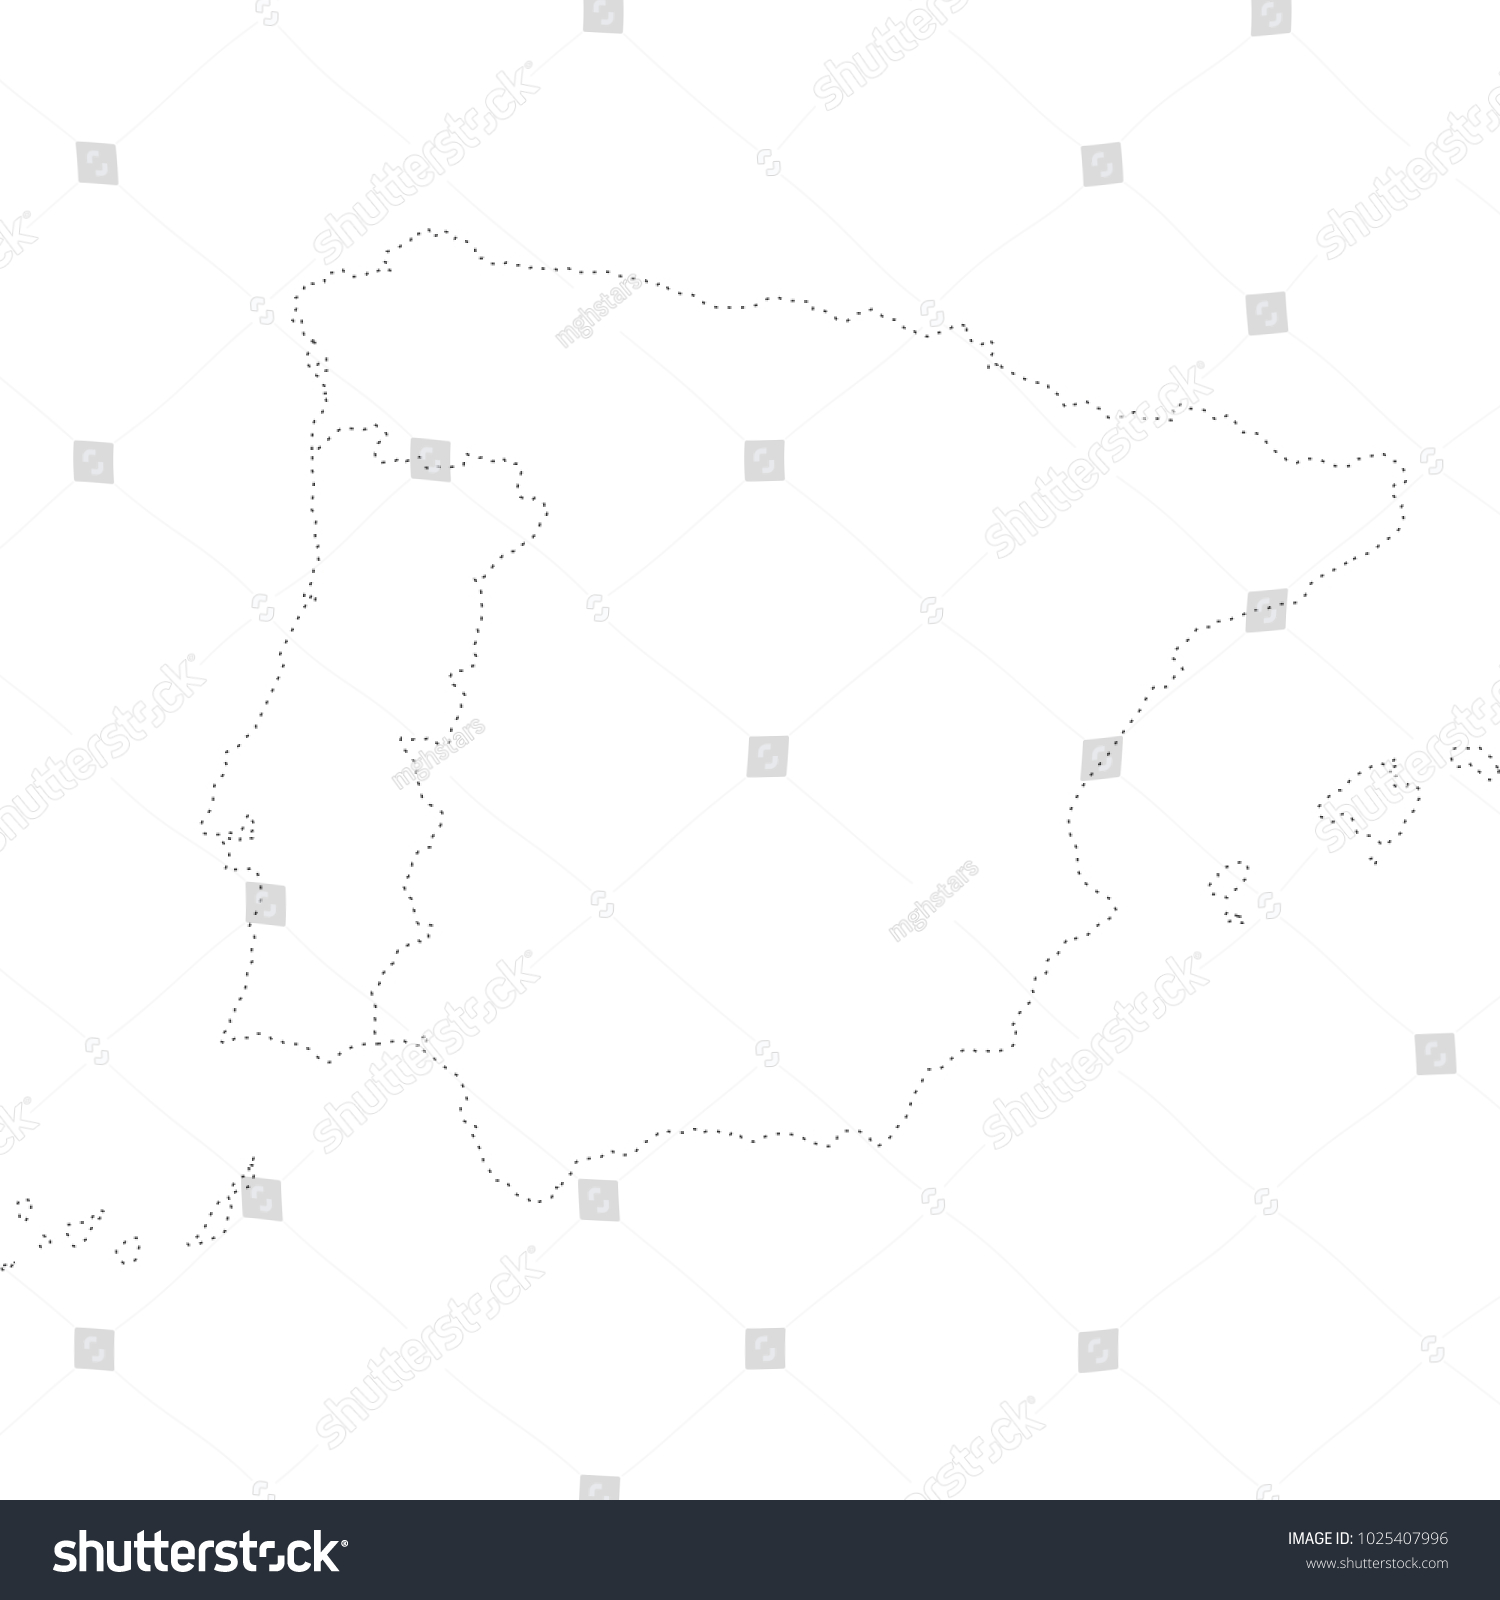 Stock Vector Iberian Peninsula Map 1025407996 